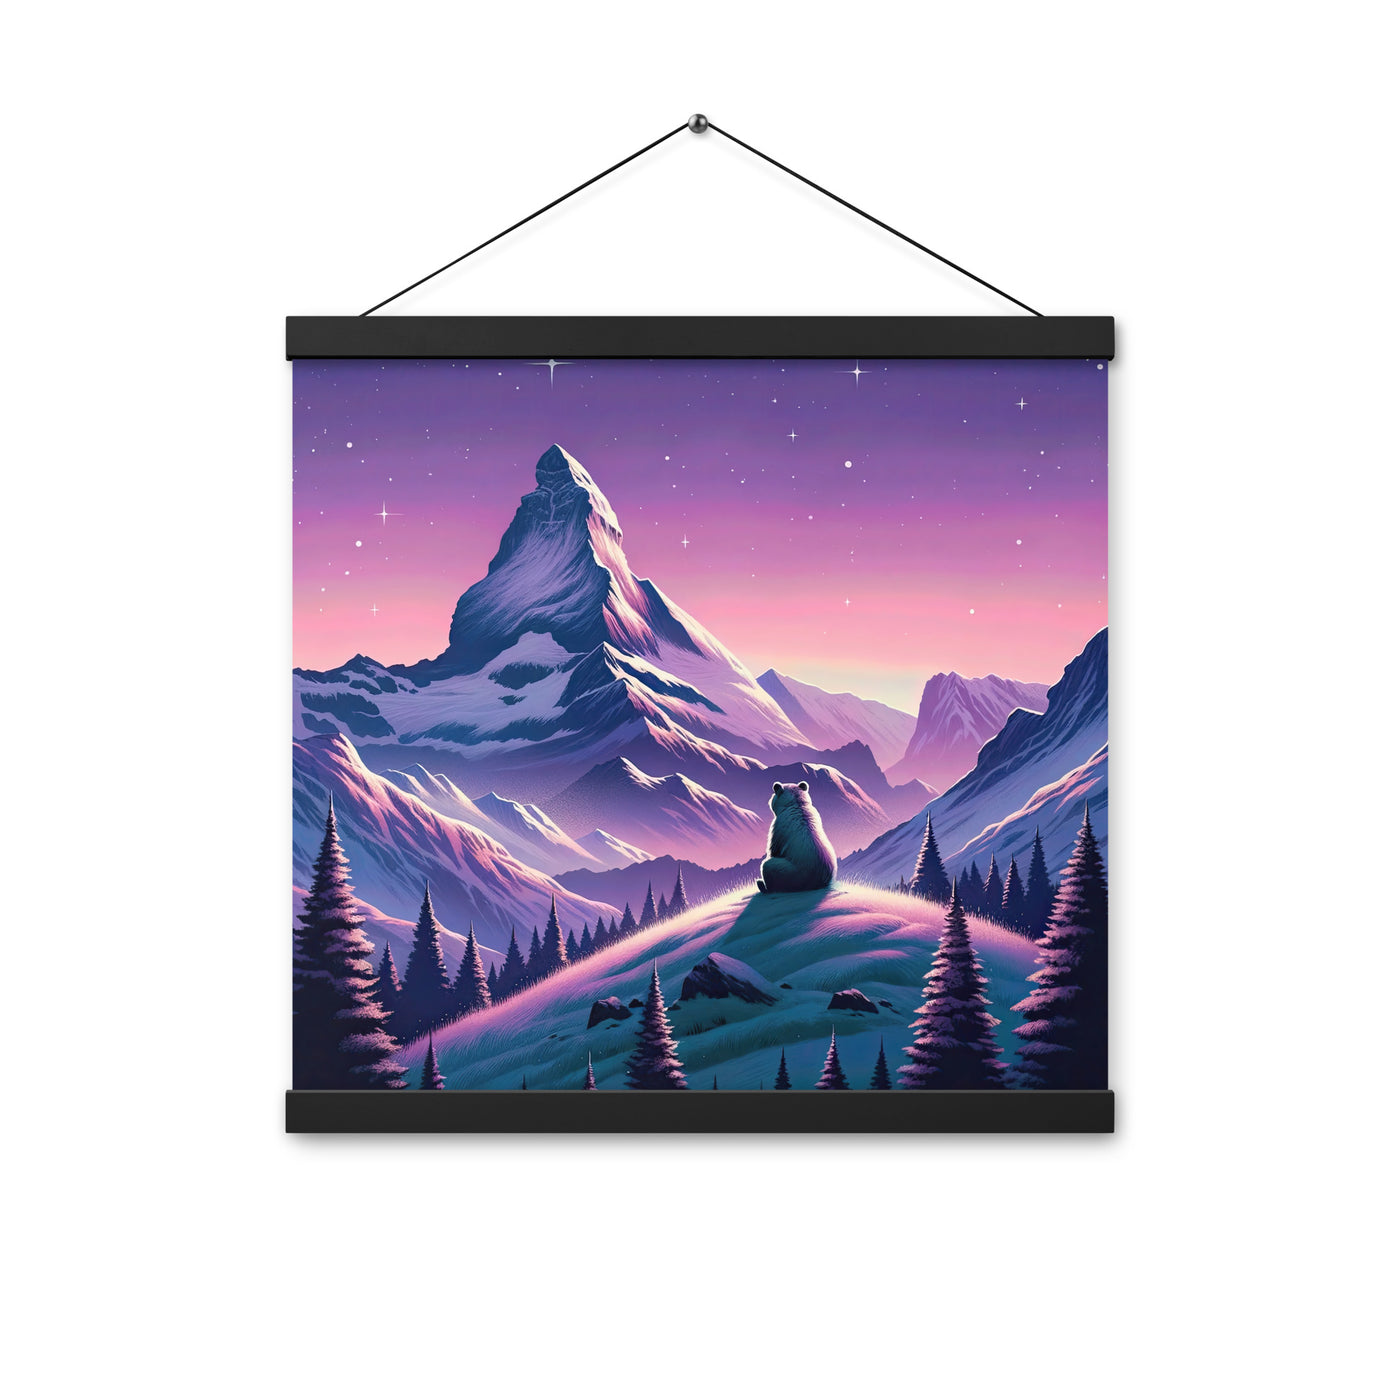 Bezaubernder Alpenabend mit Bär, lavendel-rosafarbener Himmel (AN) - Premium Poster mit Aufhängung xxx yyy zzz 40.6 x 40.6 cm